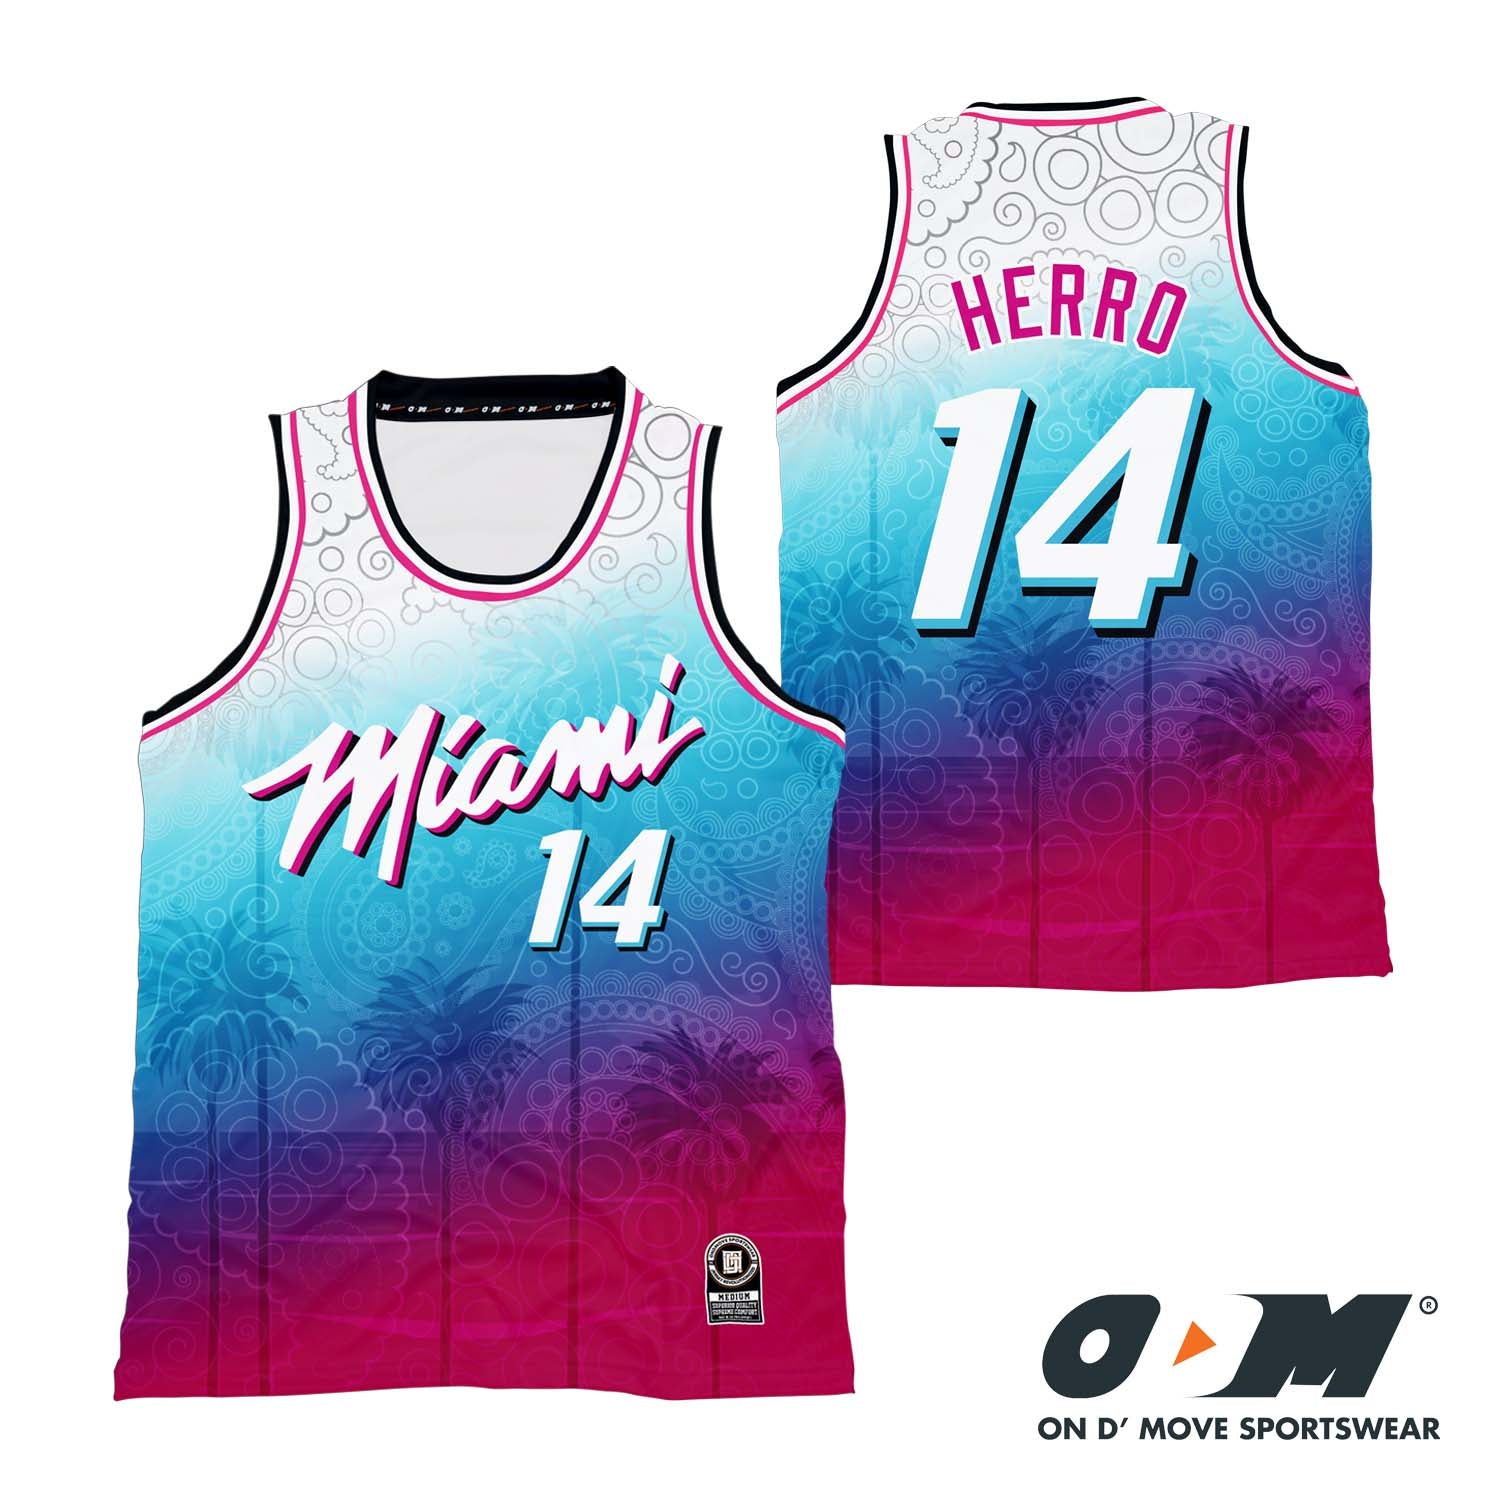 Tyler Herro Miami Heat 2021 City Edition Jersey On D Move Sportswear